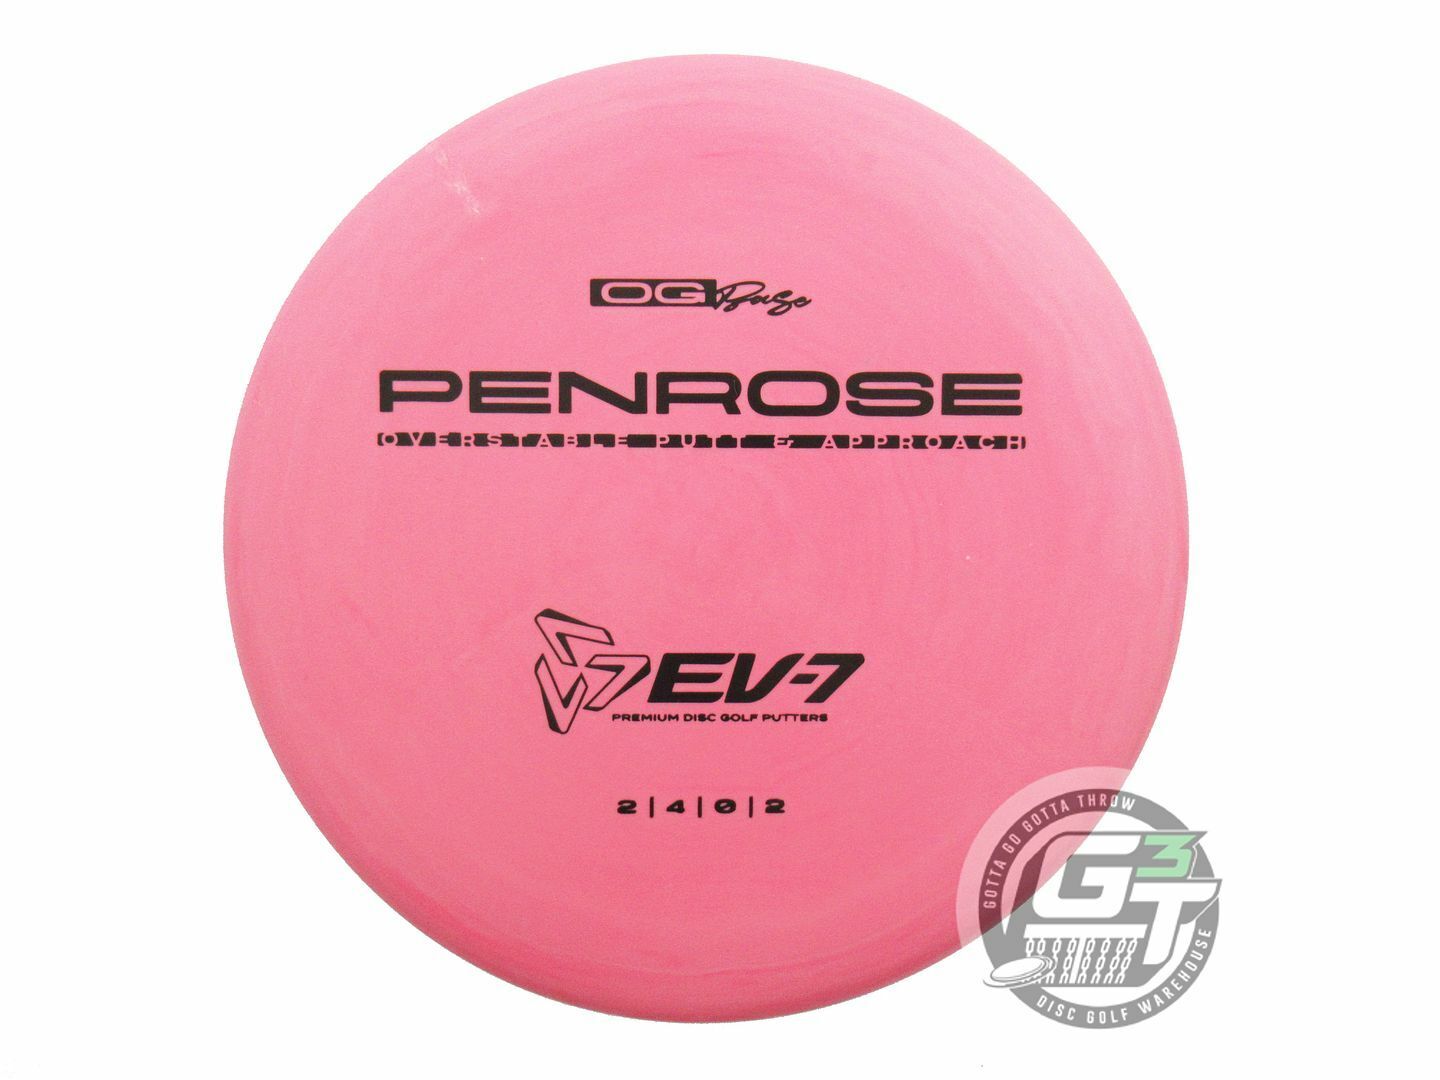 EV-7 OG Base Penrose Putter Golf Disc (Individually Listed)